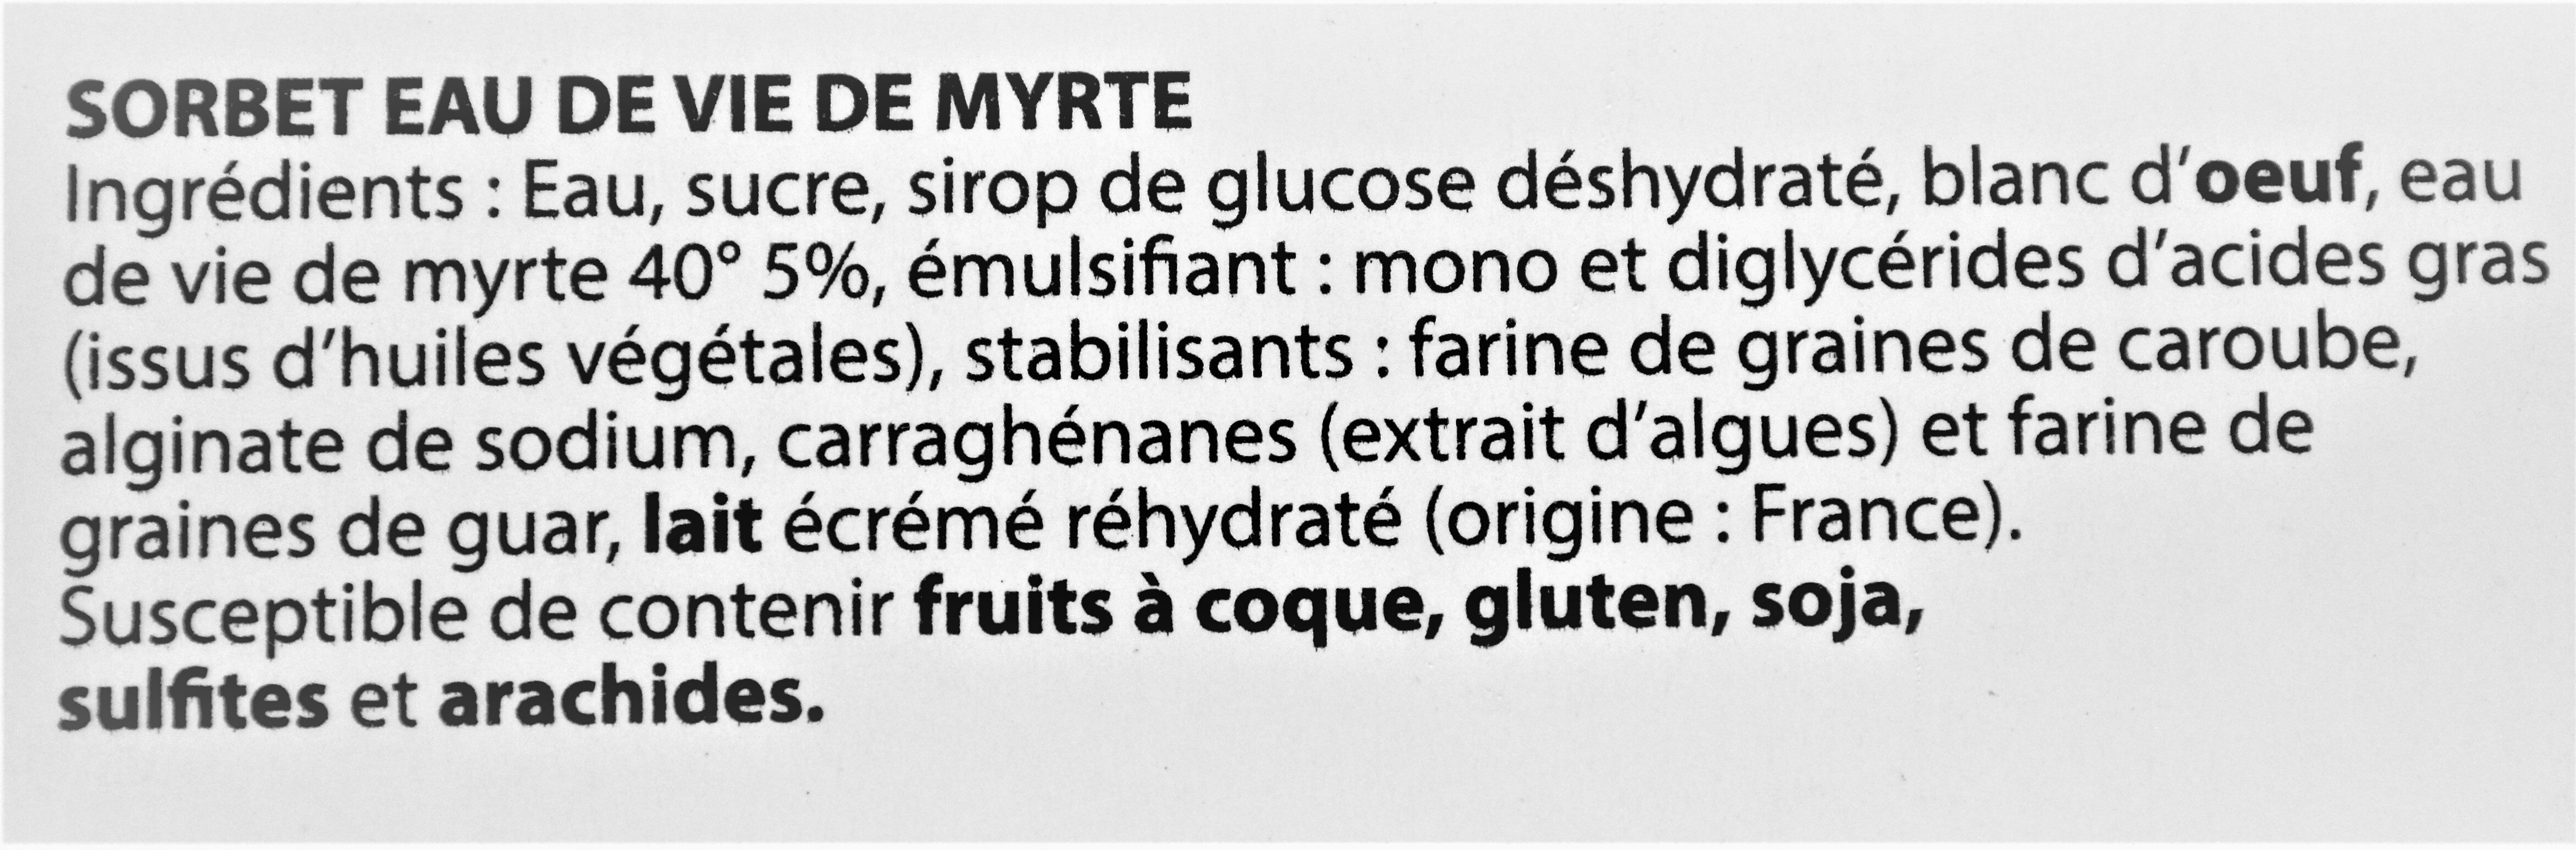 Sorbet Eau de vie de Myrte - Ingredientes - fr